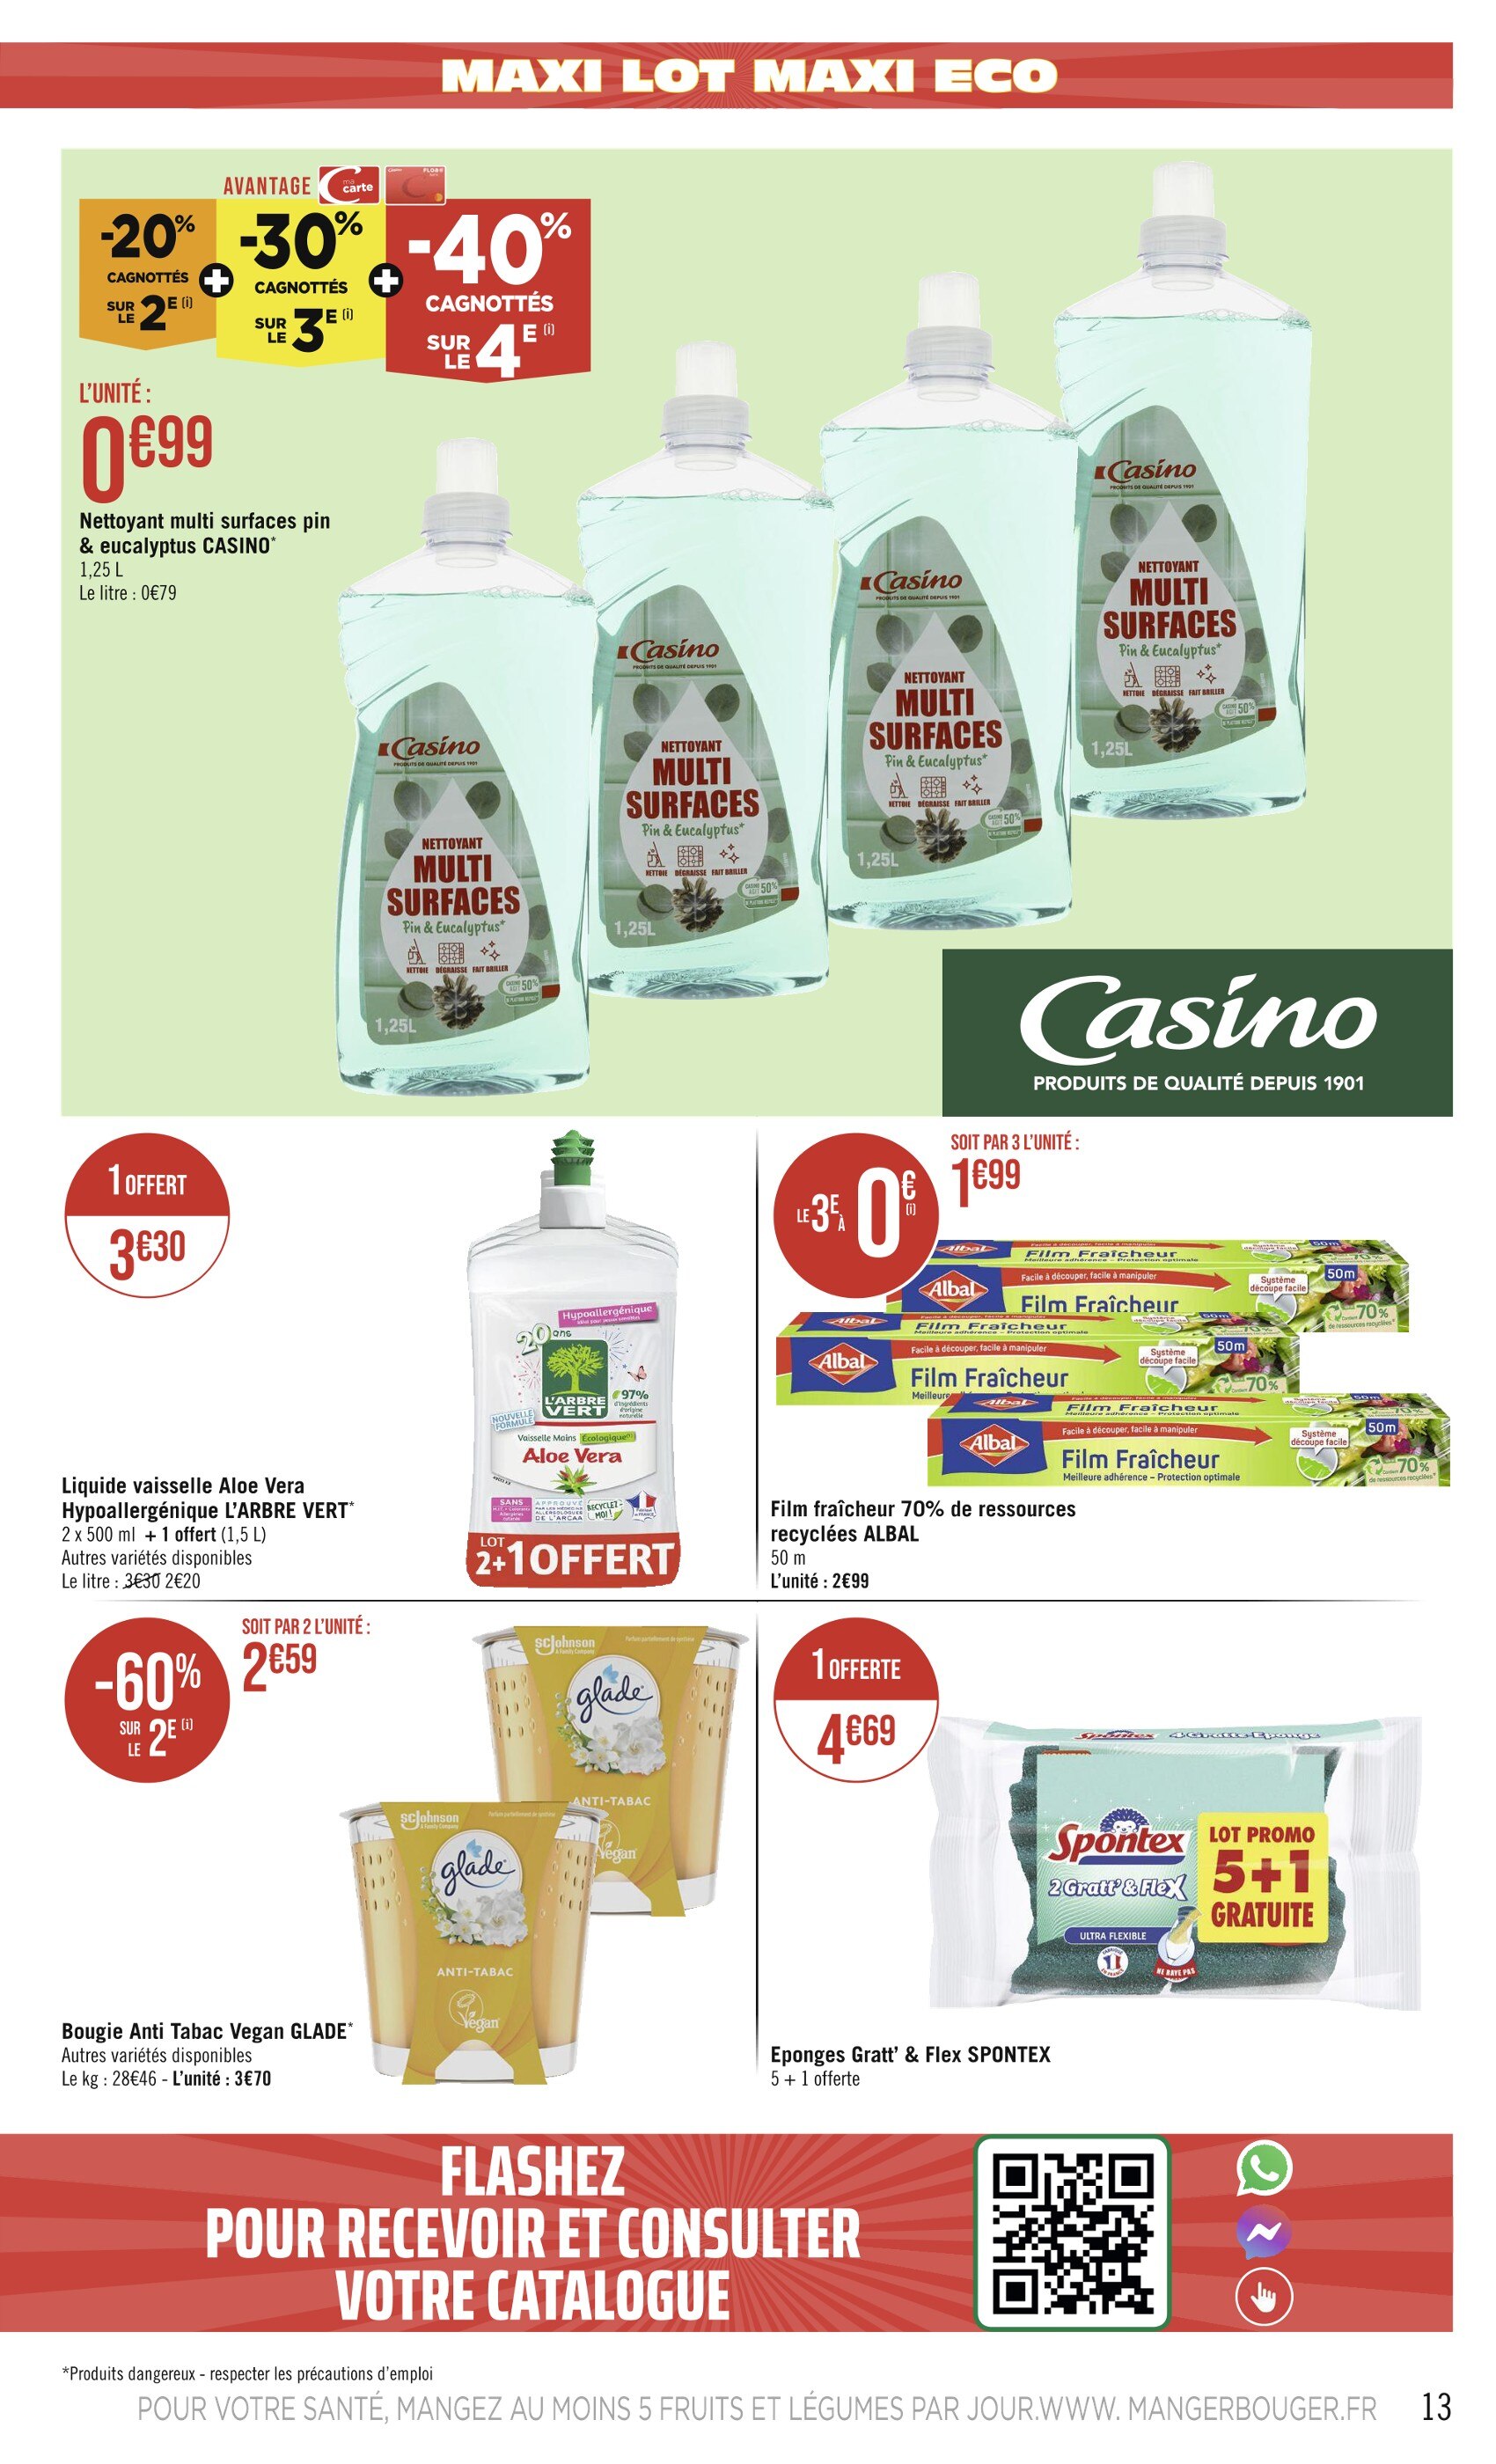 Promo L'ARBRE VERT Liquide vaisselle Aloe Vera Hypoallergénique chez Casino  Supermarchés